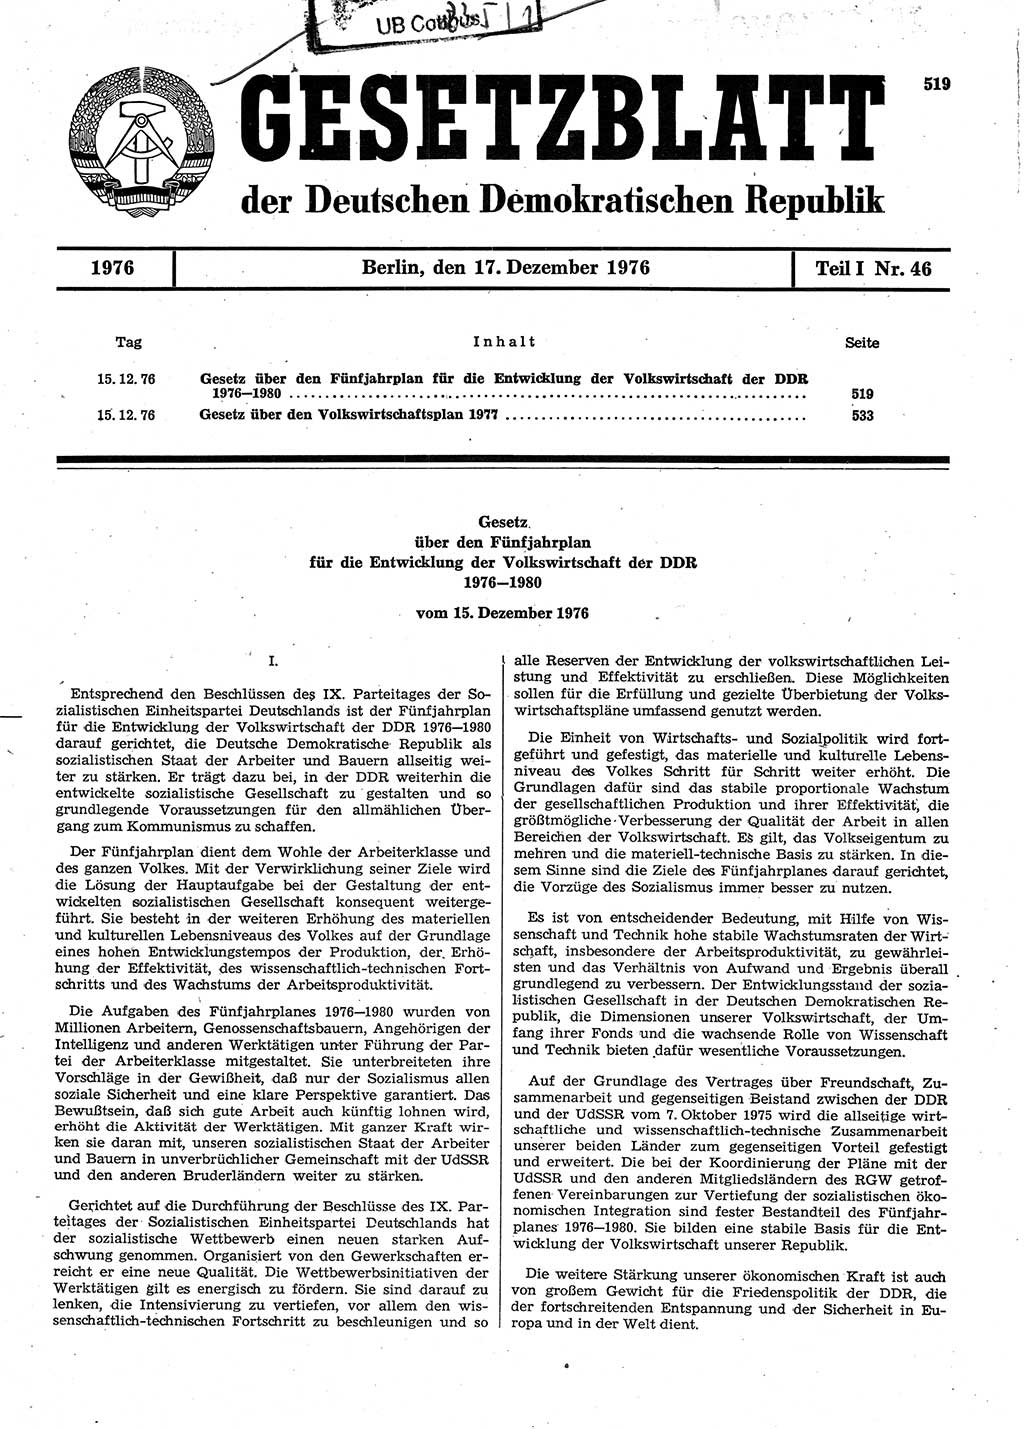 Gesetzblatt (GBl.) der Deutschen Demokratischen Republik (DDR) Teil Ⅰ 1976, Seite 519 (GBl. DDR Ⅰ 1976, S. 519)